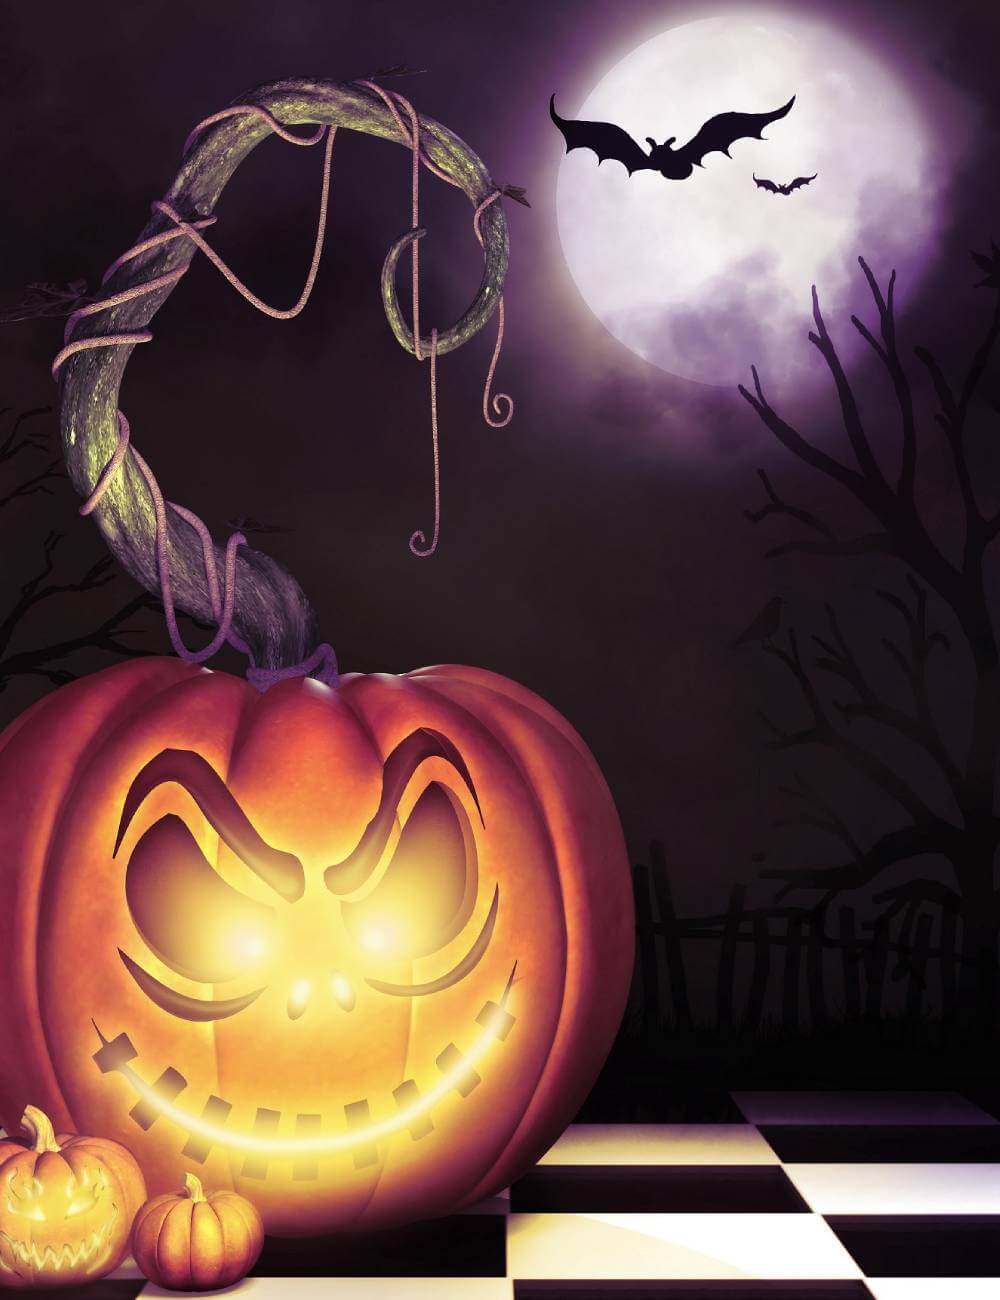 Spooky Halloween Pumpkin Lantern Moon Bat Backdrops IBD-246864 size:1.5x2